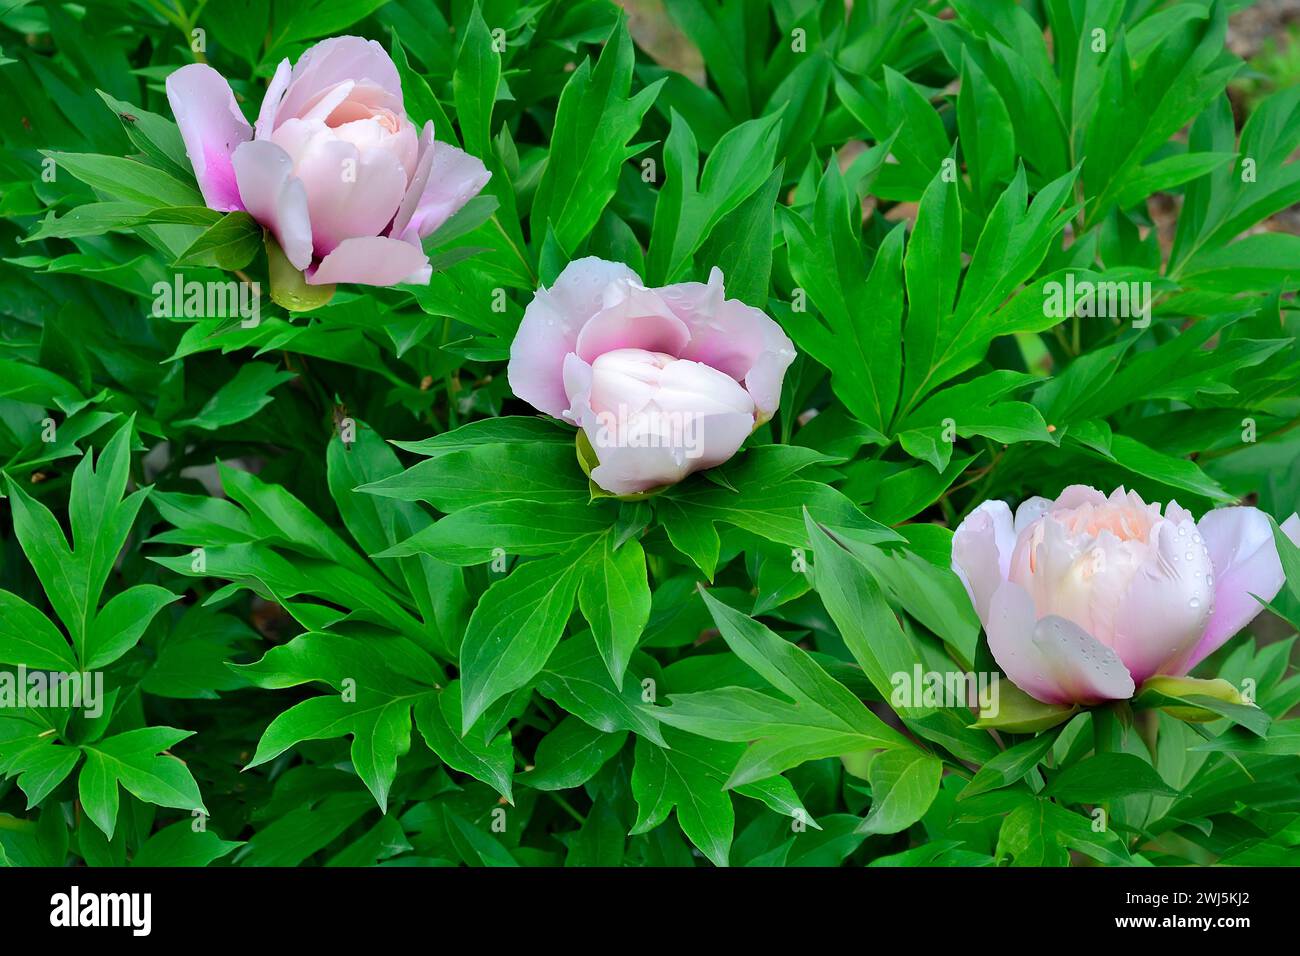 Tres cogollos de delicadas flores de peonía semi-doble blanco-rosa con manchas de lavanda oscura en la base de pétalos, se cierran en el jardín de verano. ITOH híbrido, variet Foto de stock